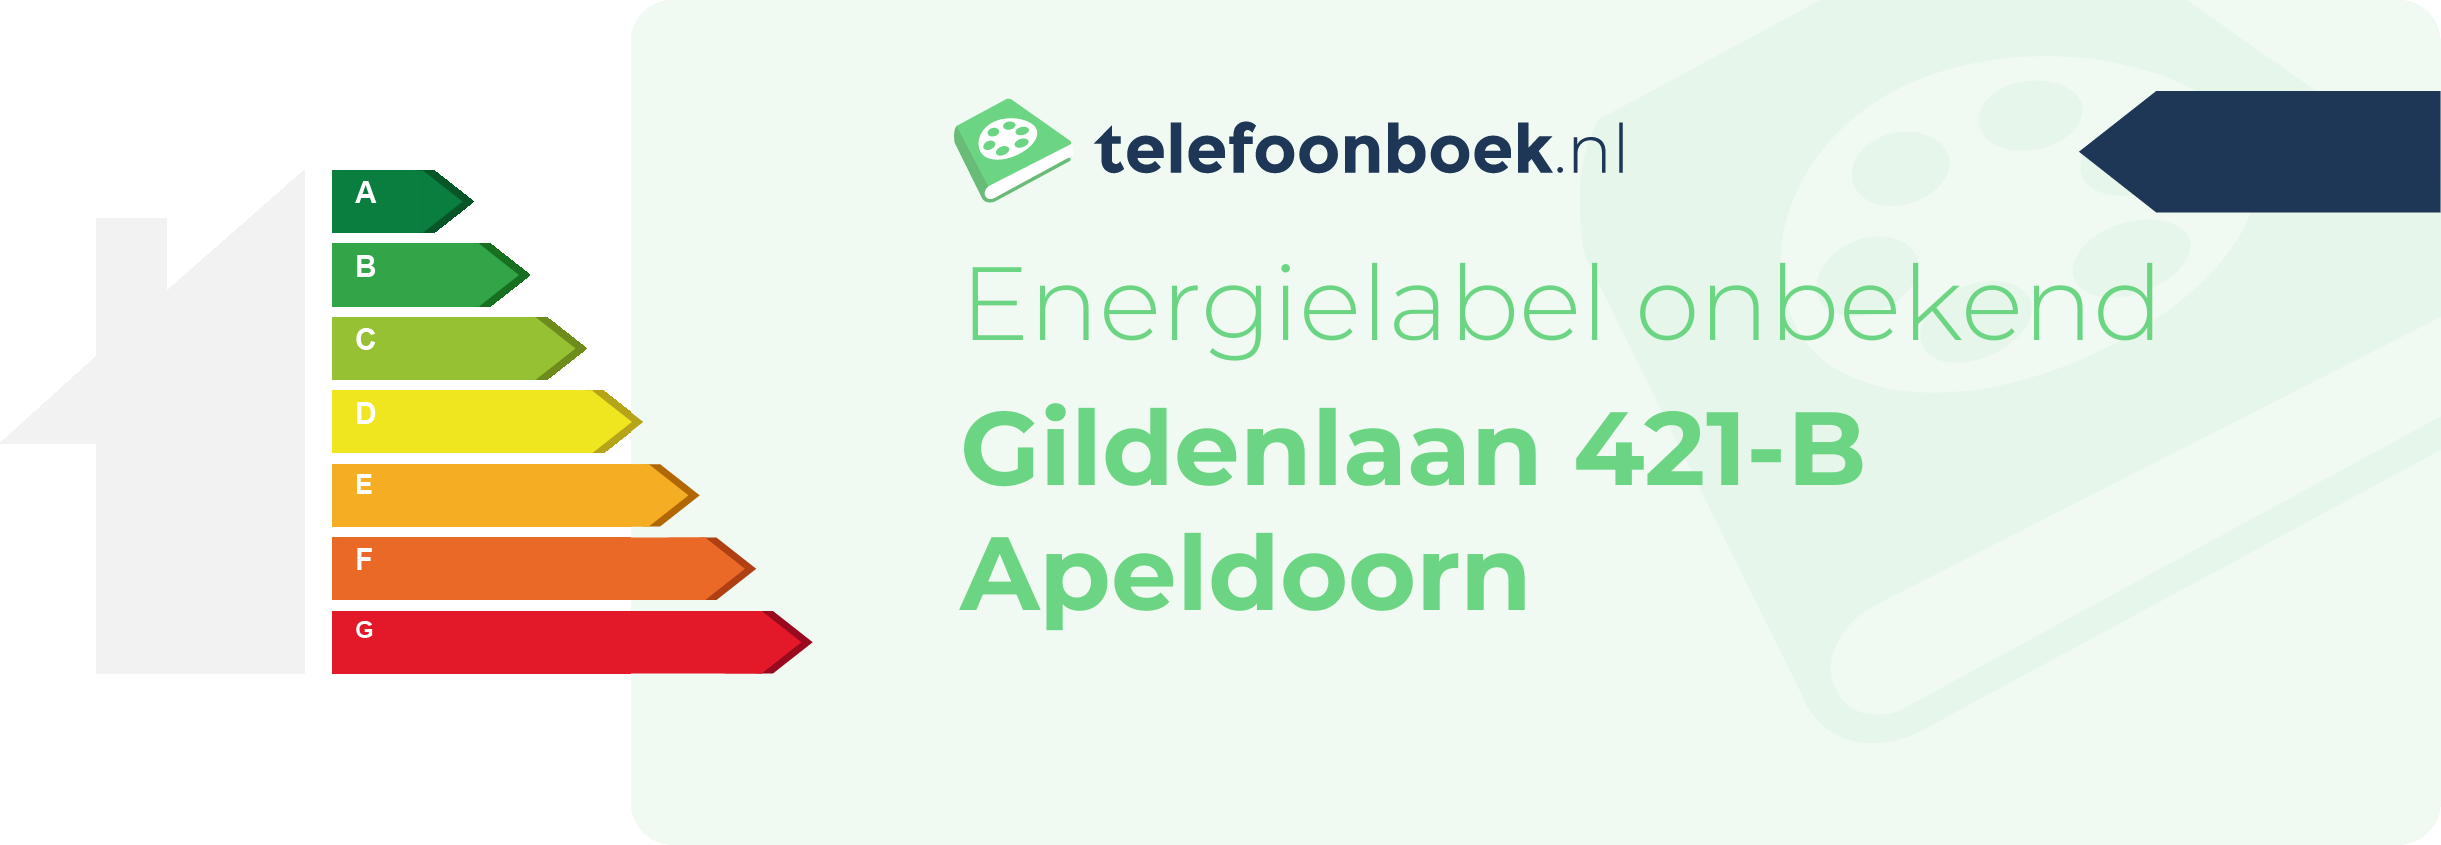 Energielabel Gildenlaan 421-B Apeldoorn